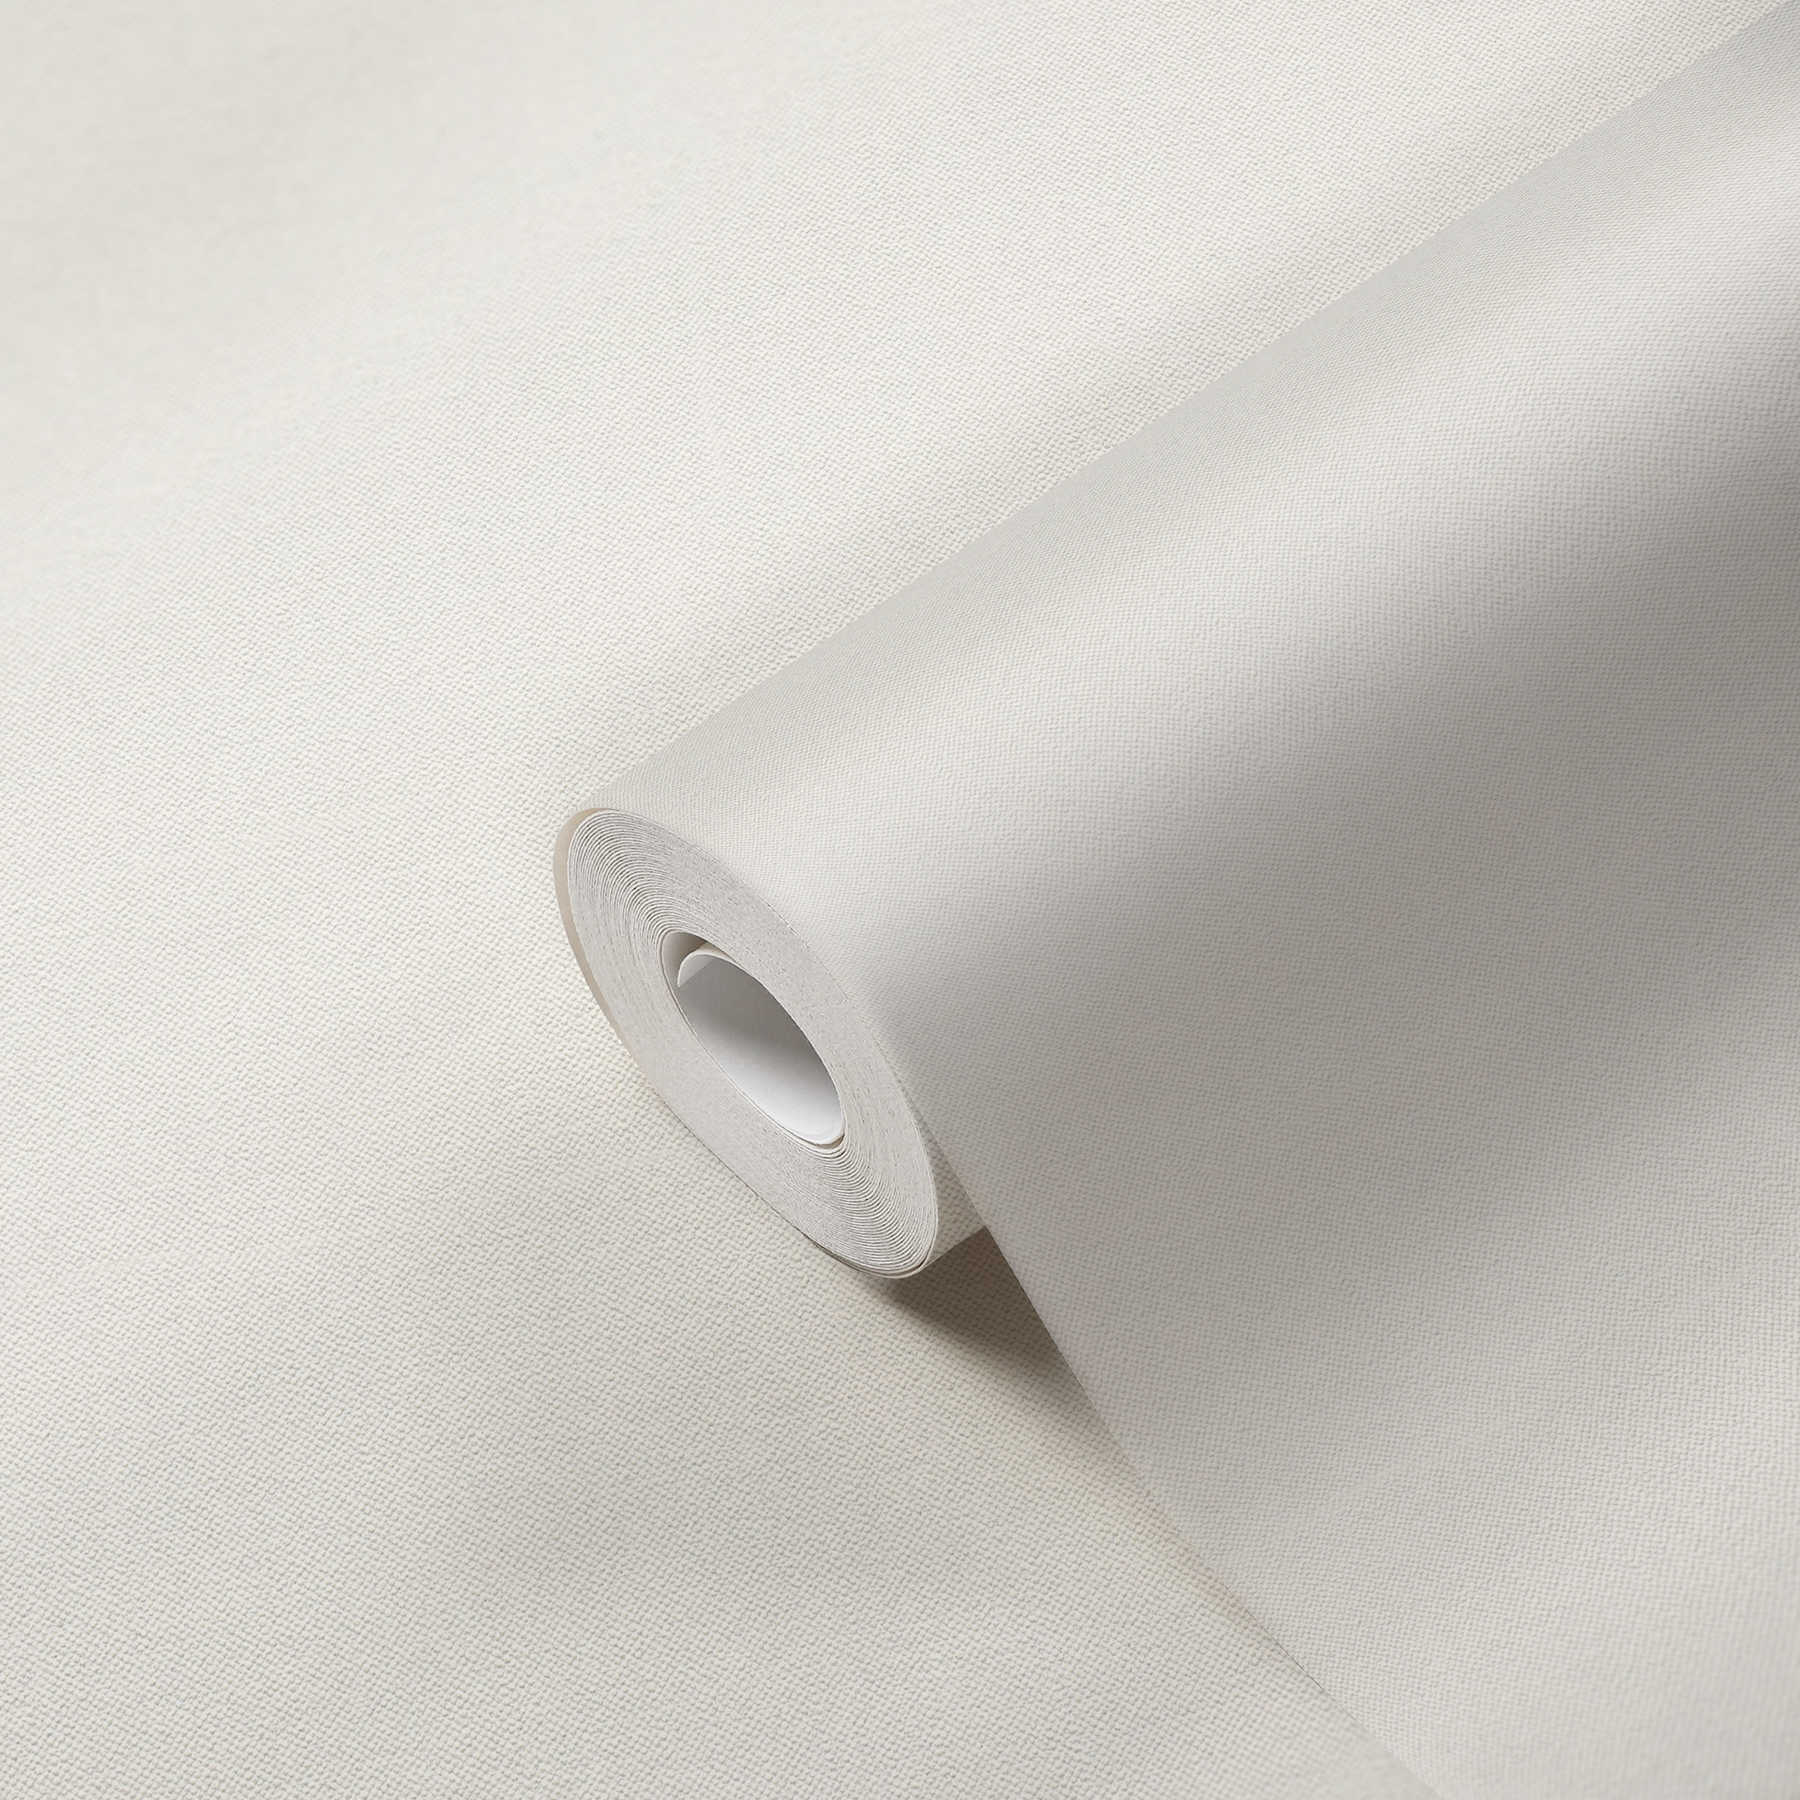             Leinenoptik Tapete Weiß mit Silber Glitzer Effekt & Strukturdesign
        